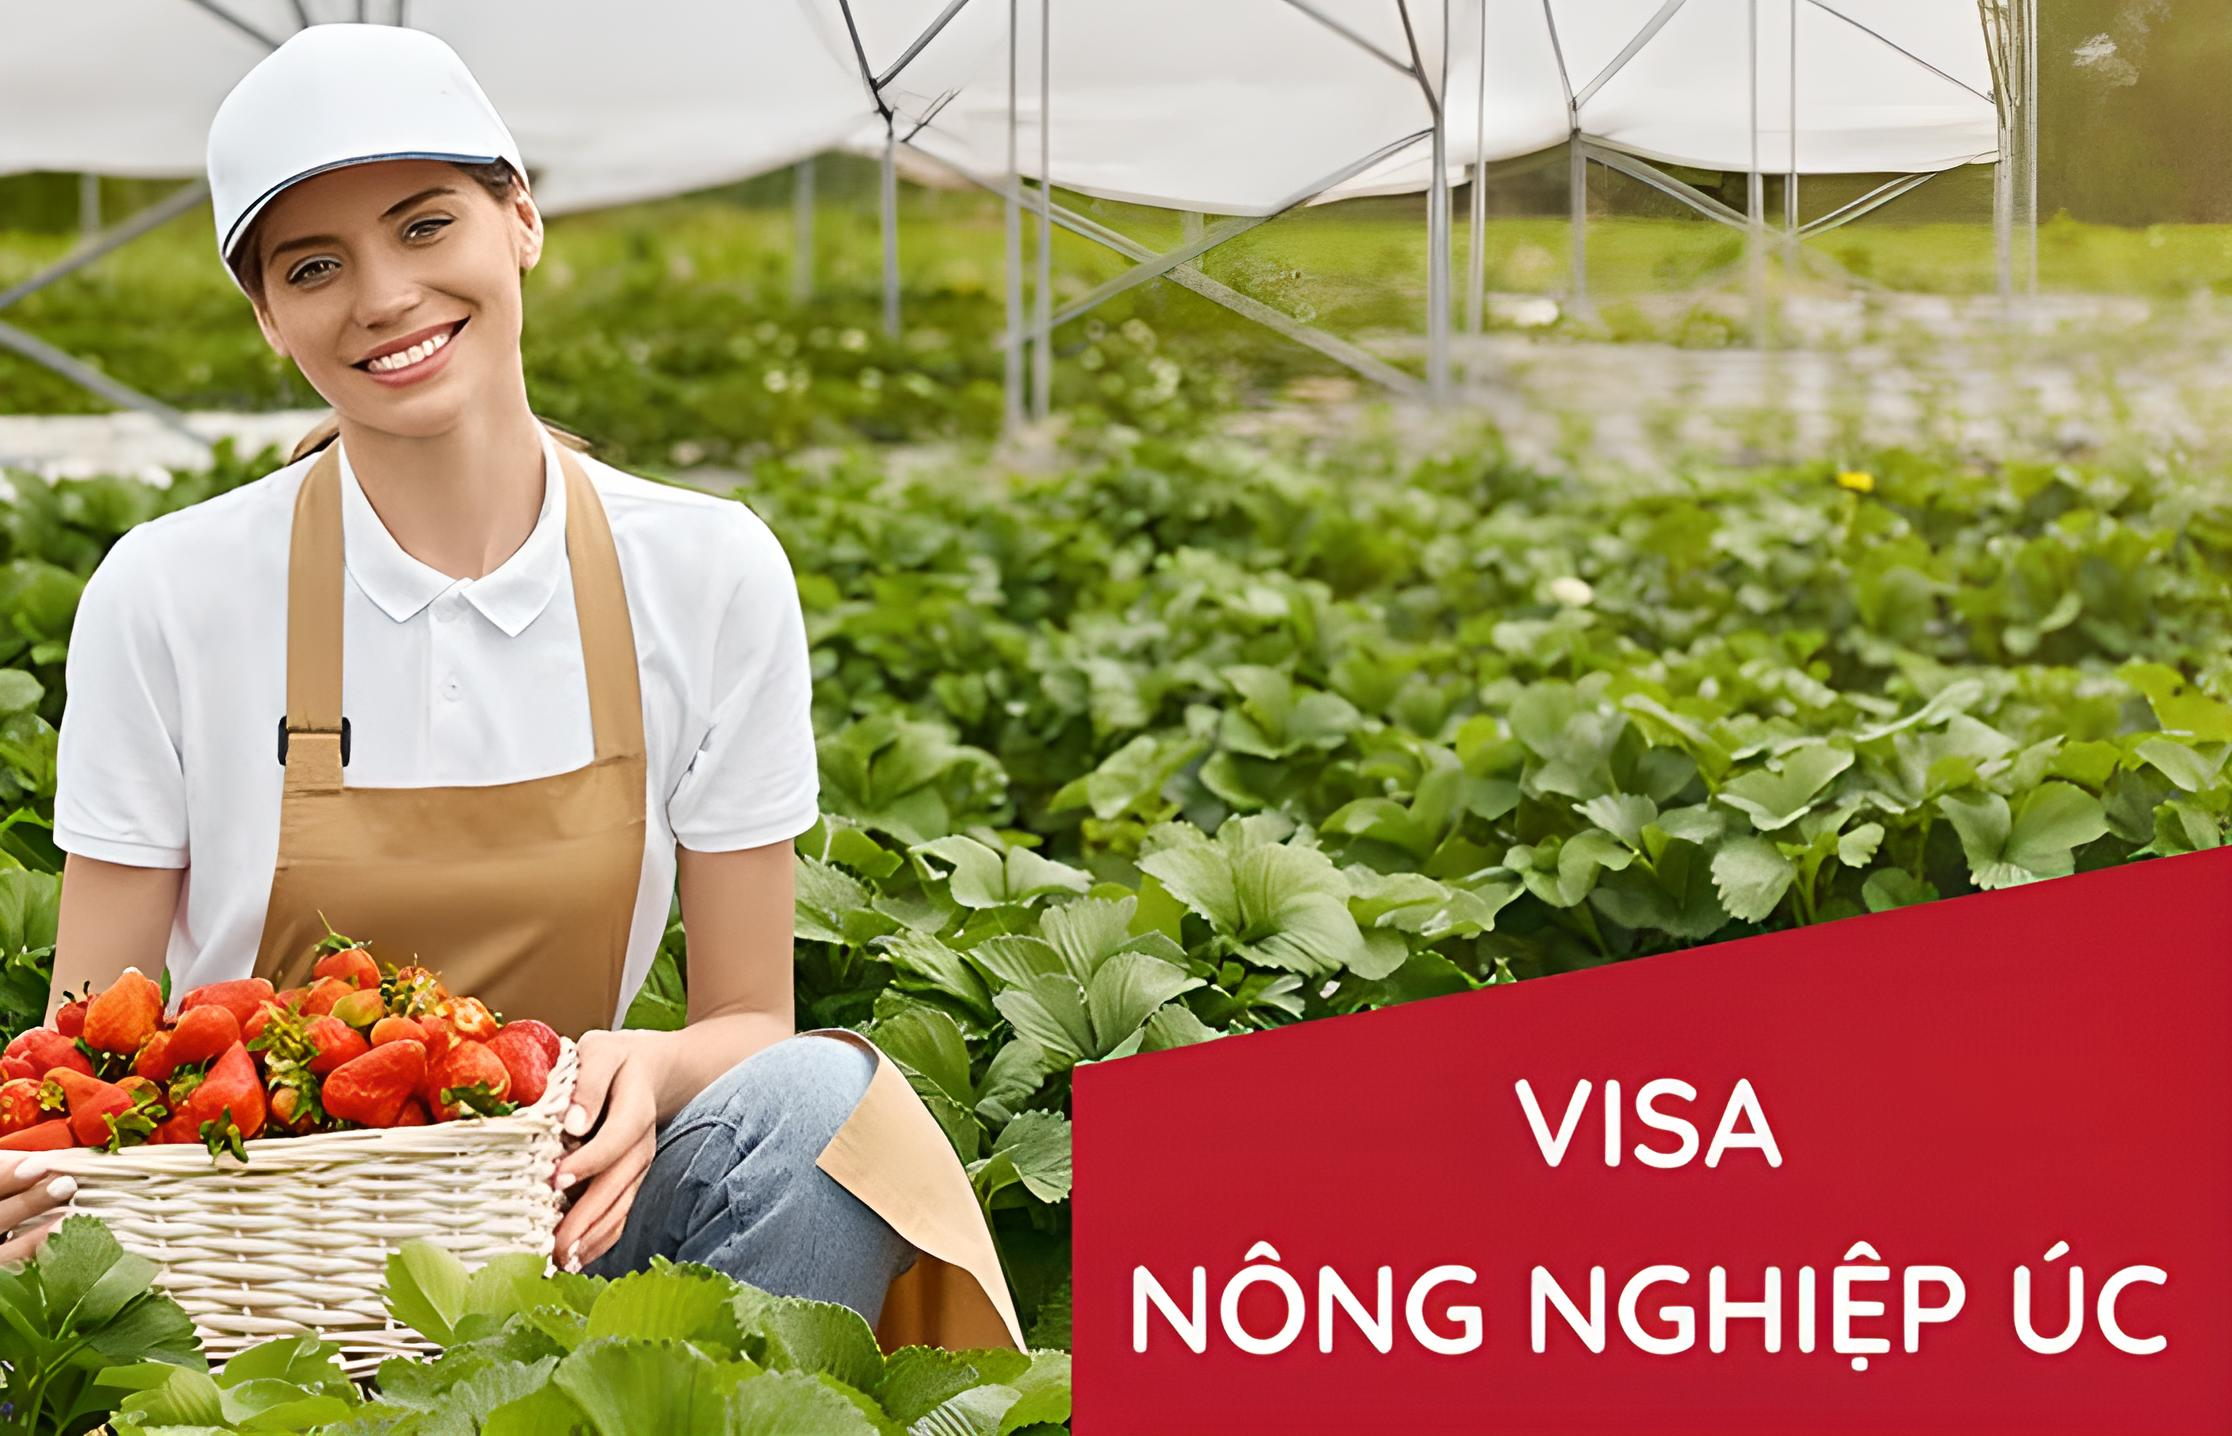 Visa nông nghiệp úc 403 - Tất cả thông tin bạn cần biết